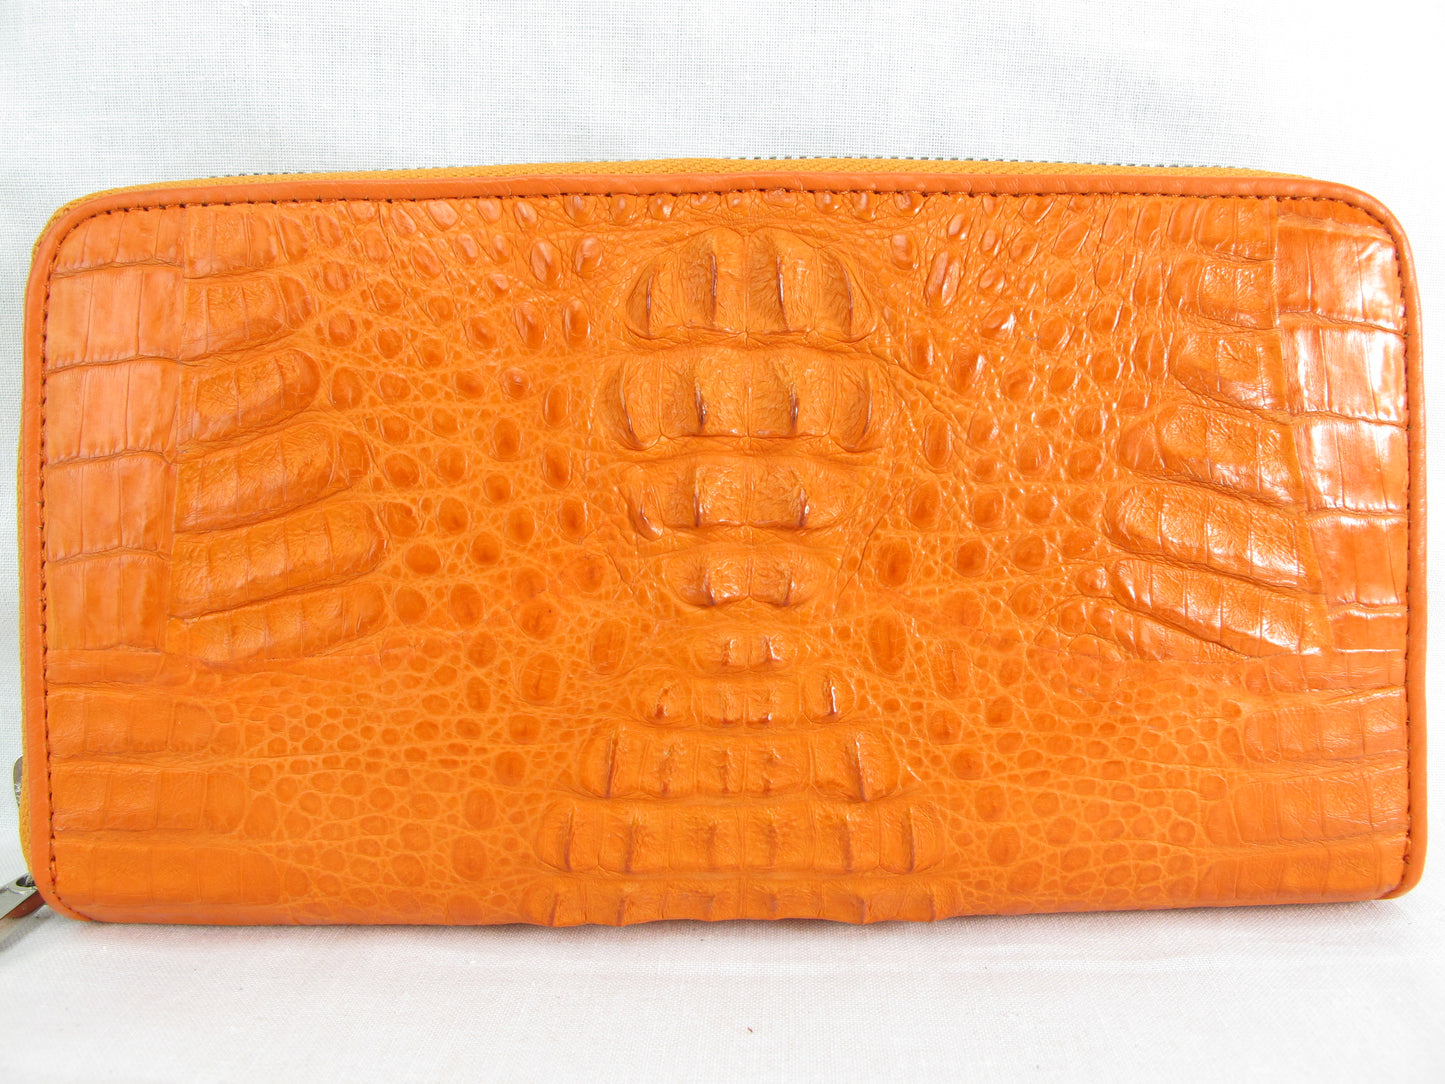 Genuine Caiman Crocodile Hornback Skin Leather Zip Around Clutch Wallet Purse